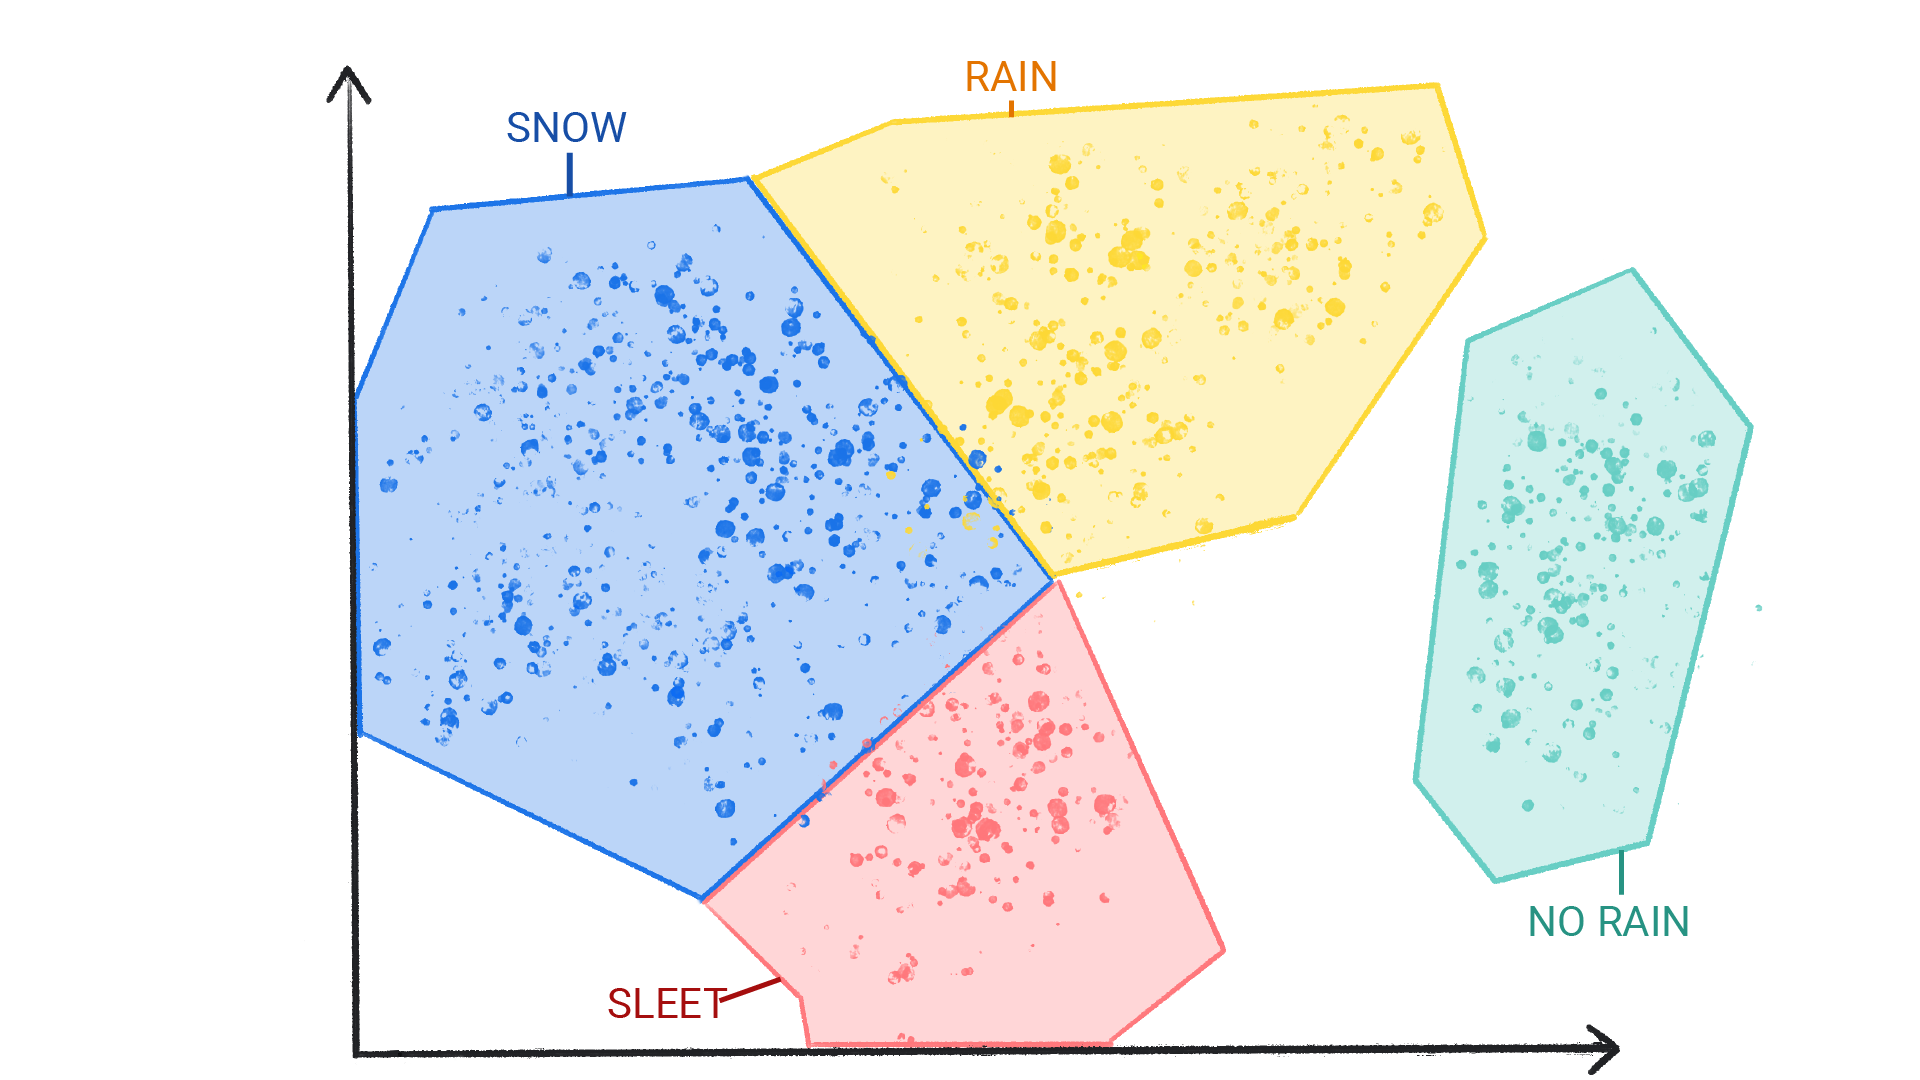 รูปภาพแสดงจุดสีในกลุ่มที่มีป้ายกำกับเป็นหิมะ ฝน ลูกเห็บ และฝนที่ไม่มีฝนล้อมอยู่ในรูปร่างและมีเส้นขอบซึ่งกันและกัน